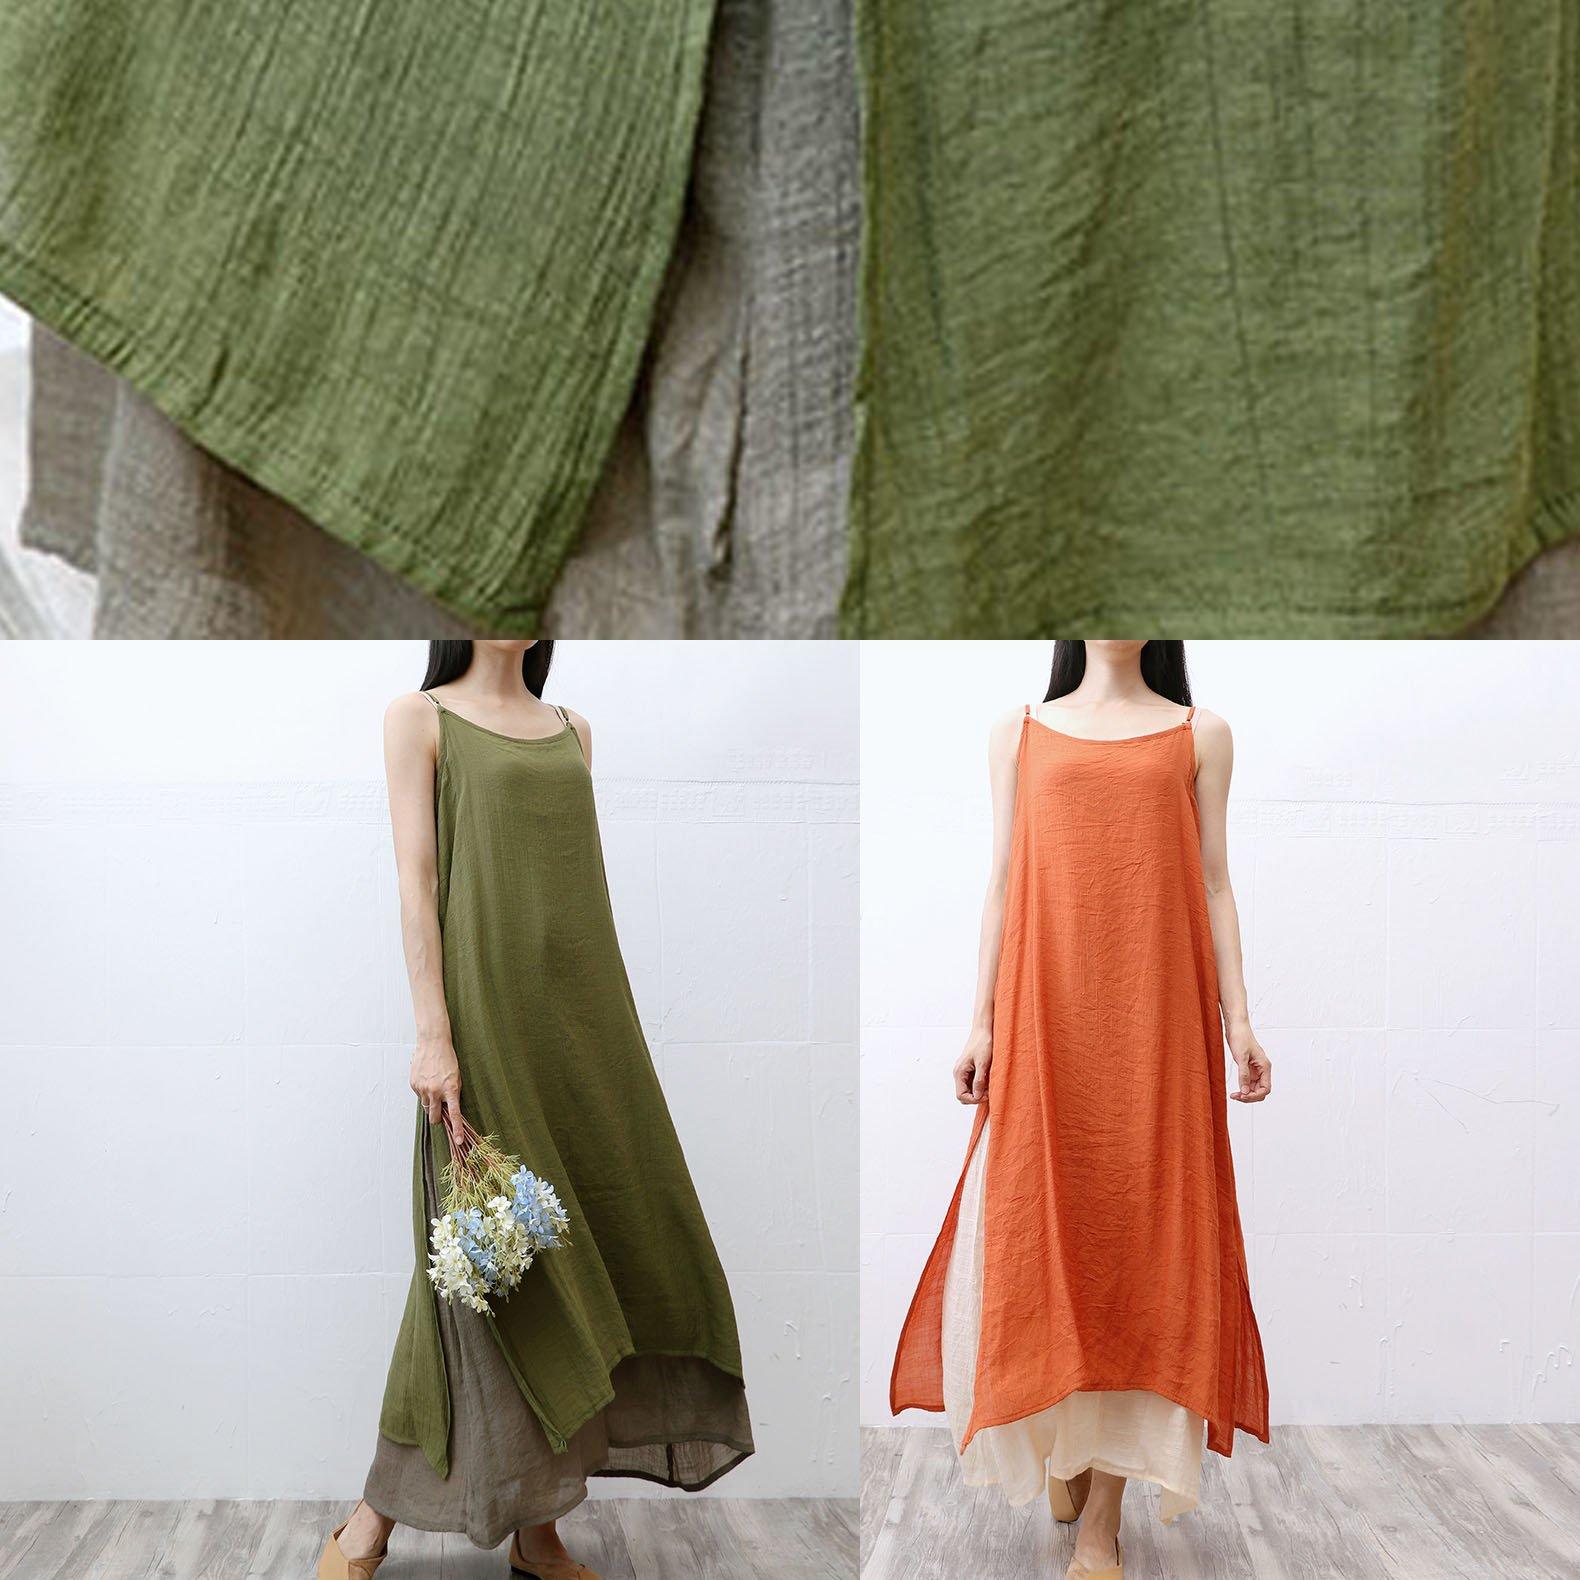 Handmade sleeveless cotton Long Shirts Fashion Ideas orange Maxi Dress summer - Omychic